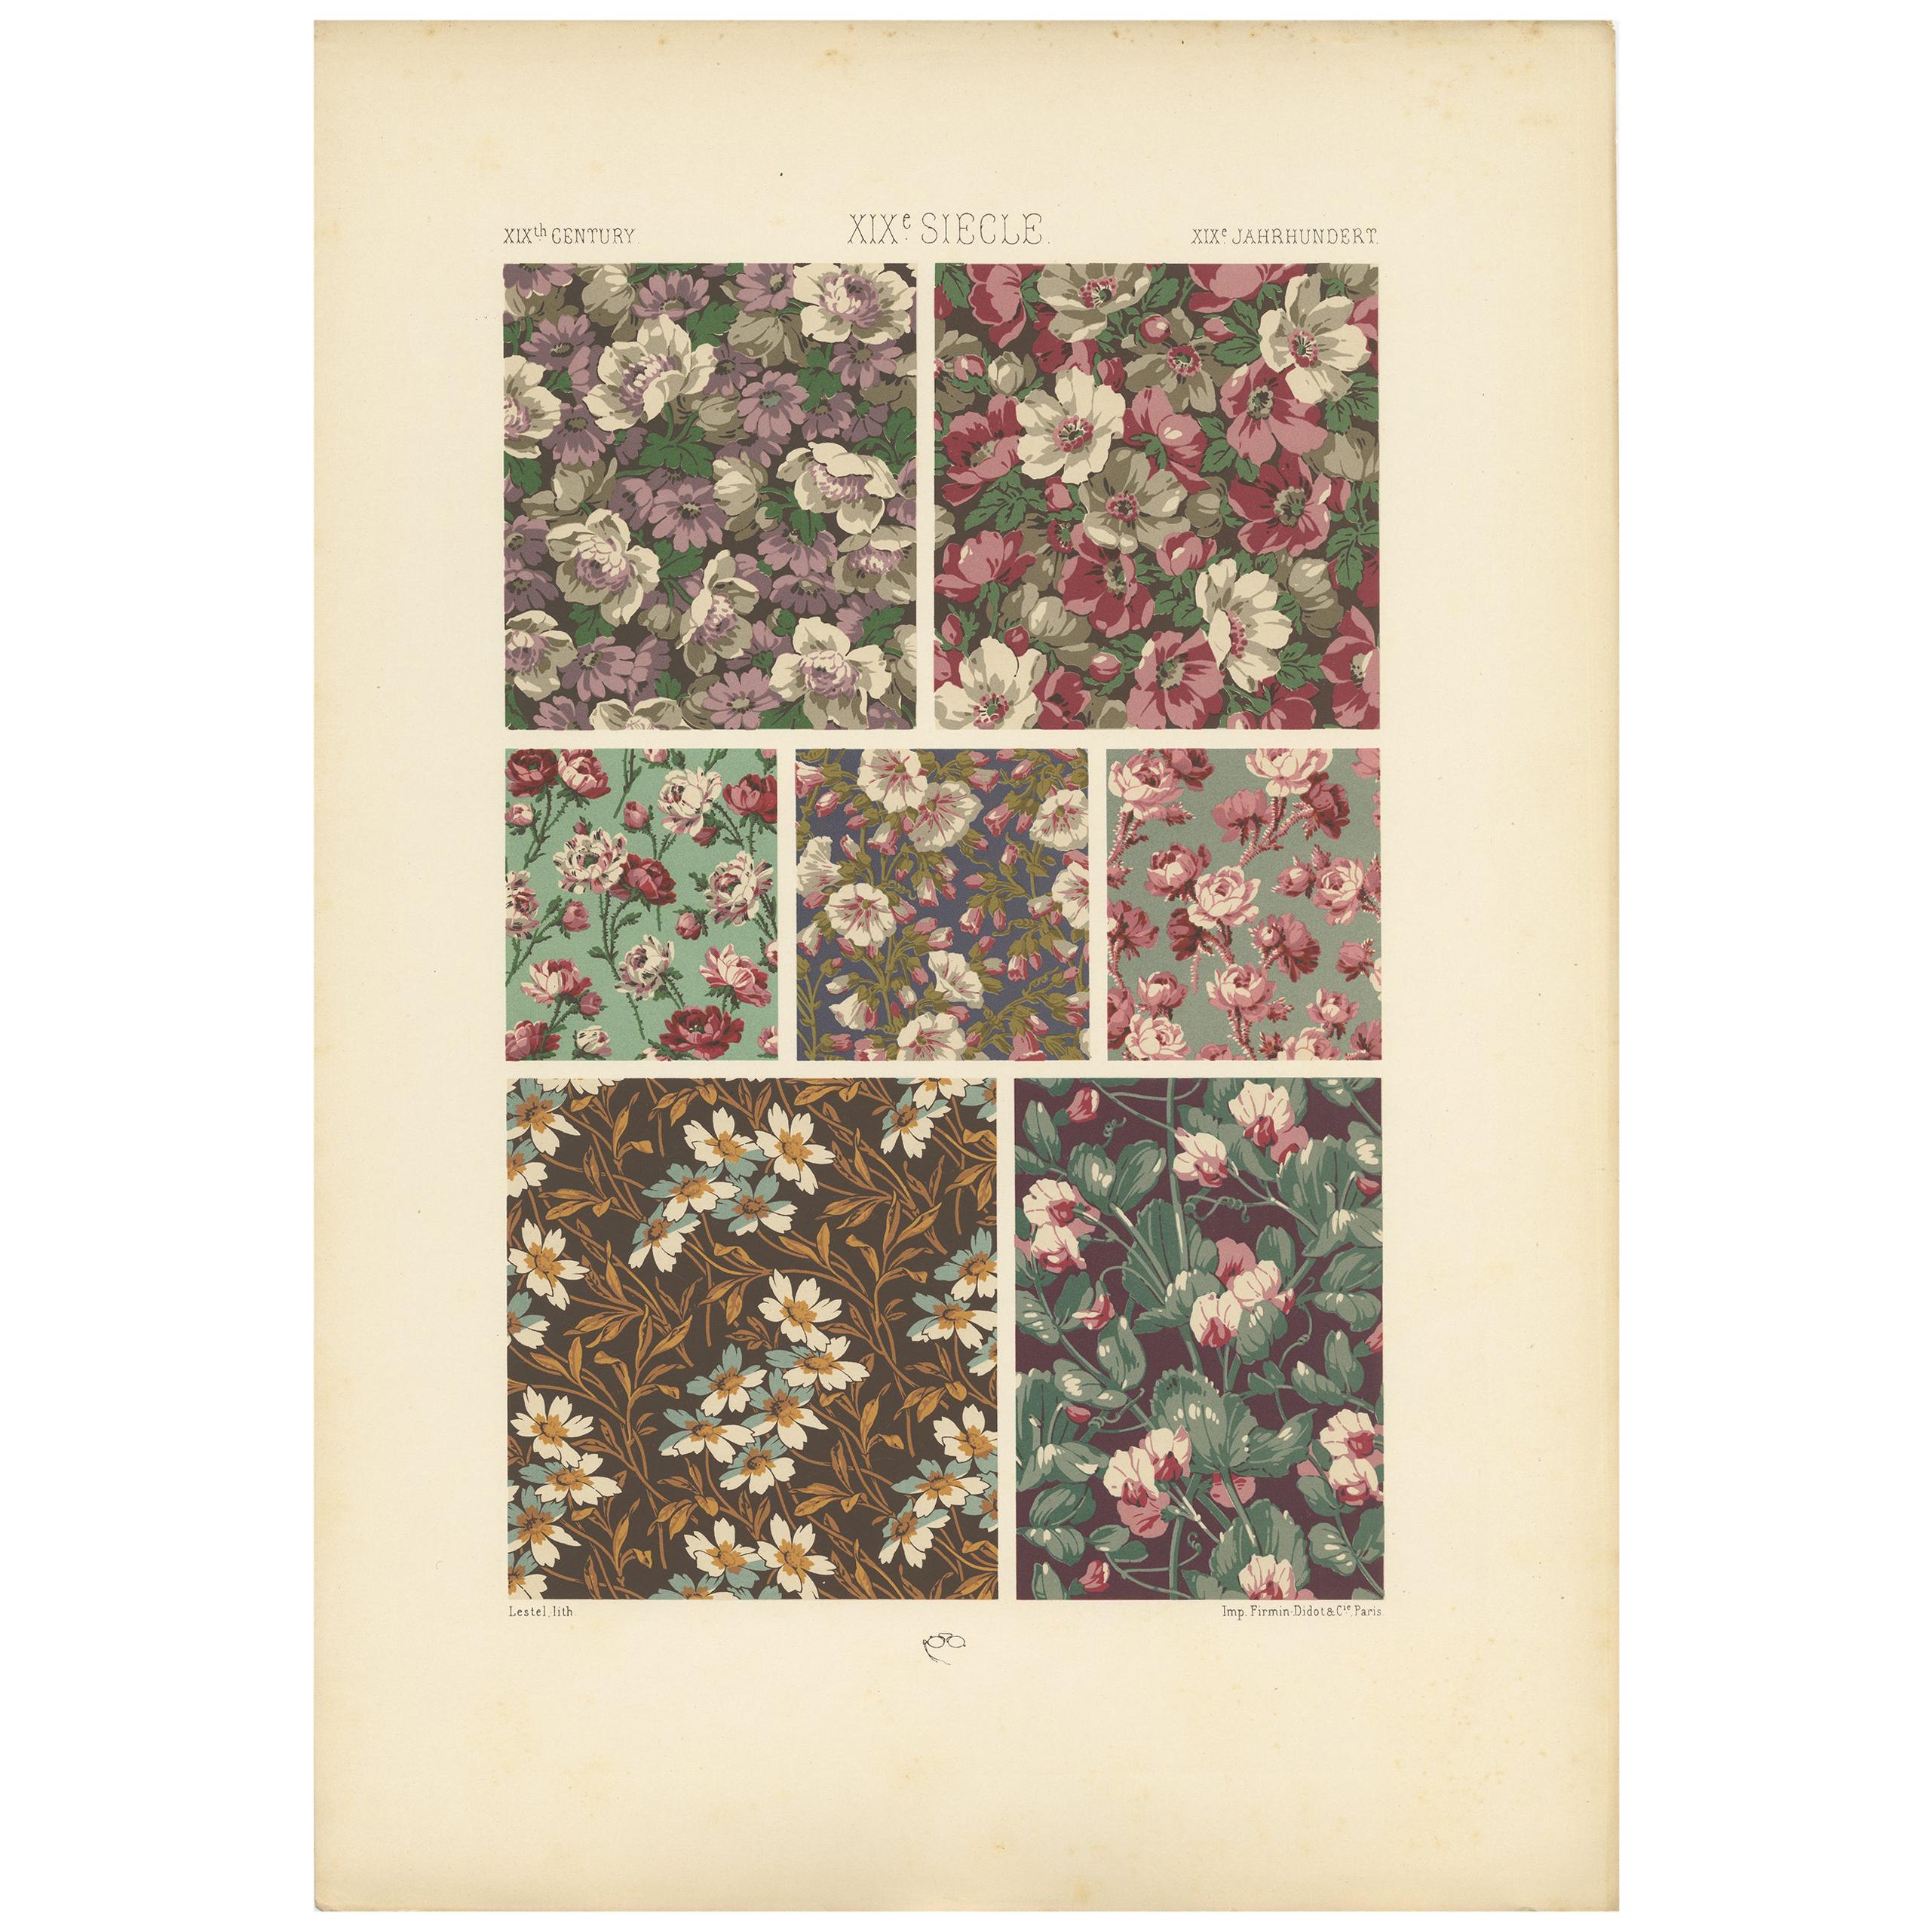 Impression ancienne Pl. 120 de motifs floraux du XIXe siècle par Racinet, datant d'environ 1890